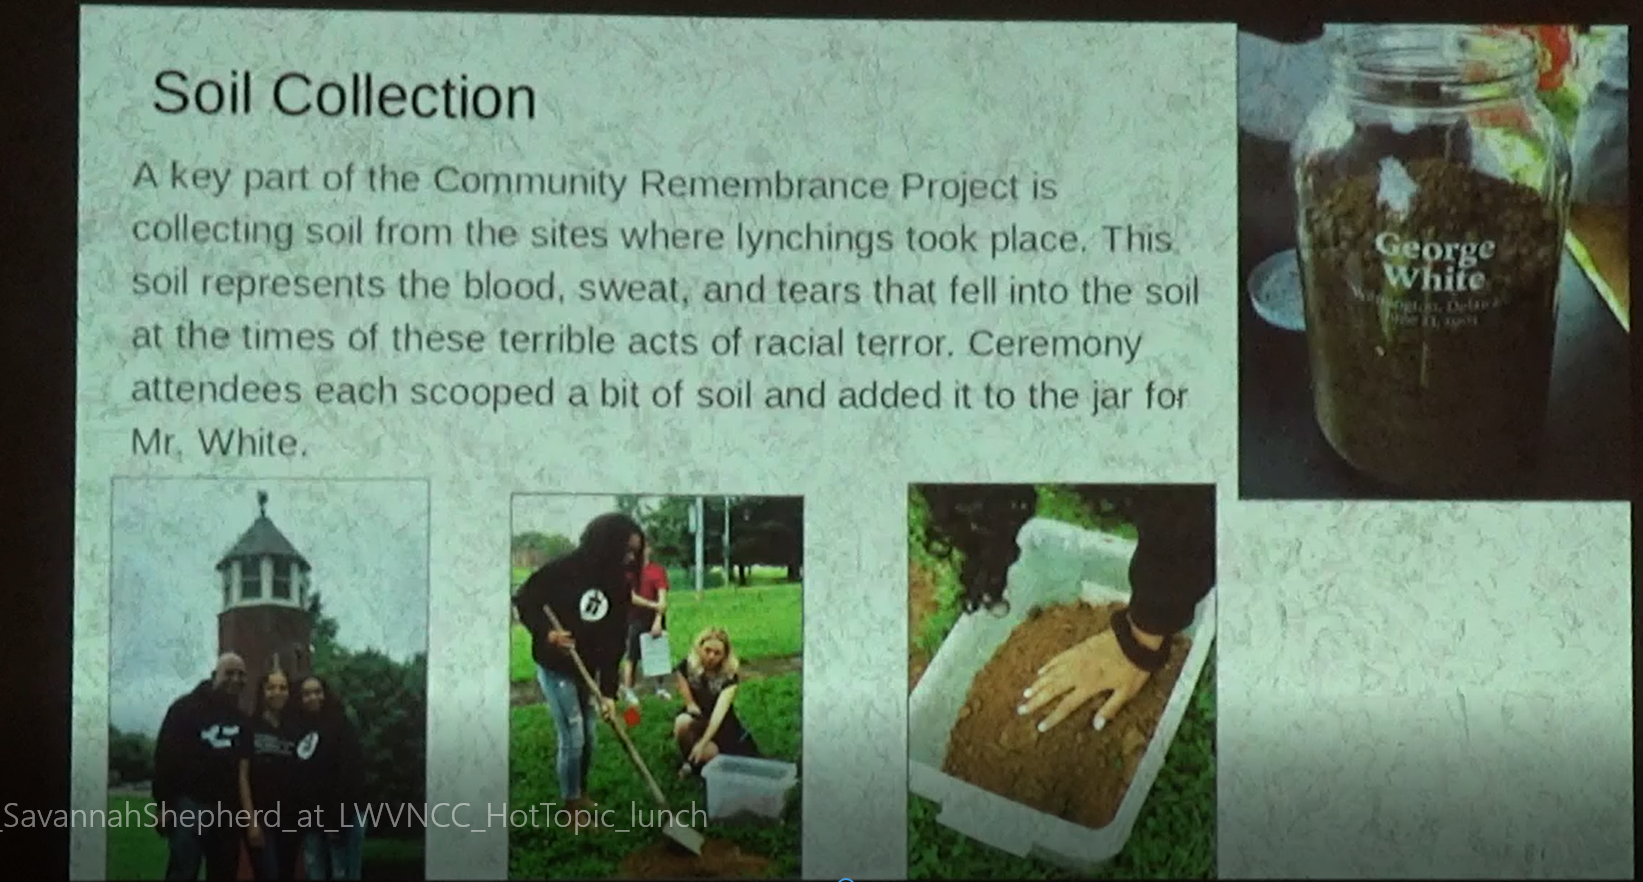 "Soil Collection" presentation slide